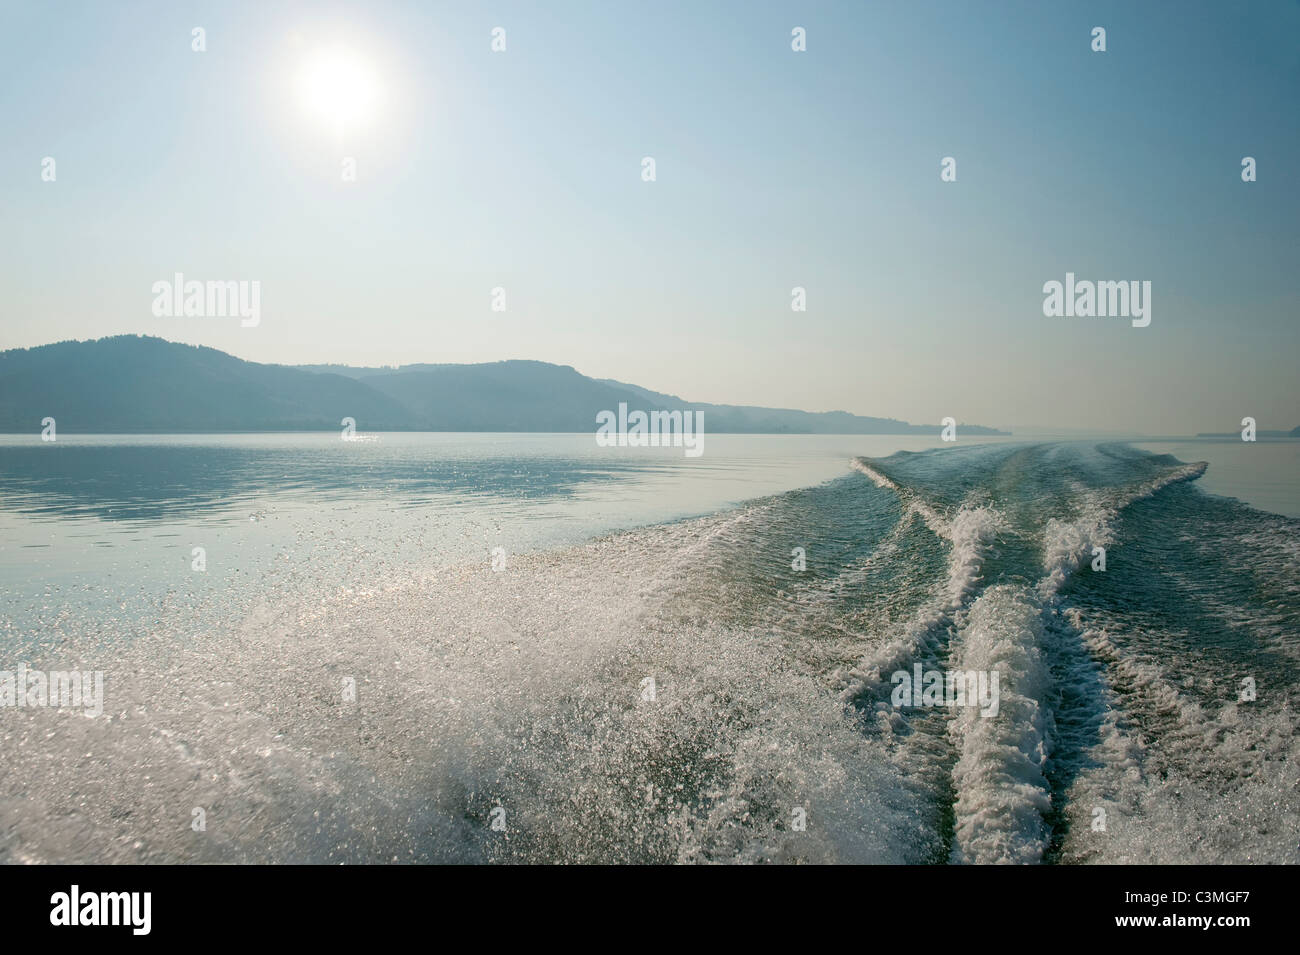 Alemania, Bodman, Vista de wake lancha en el lago de Constanza Foto de stock